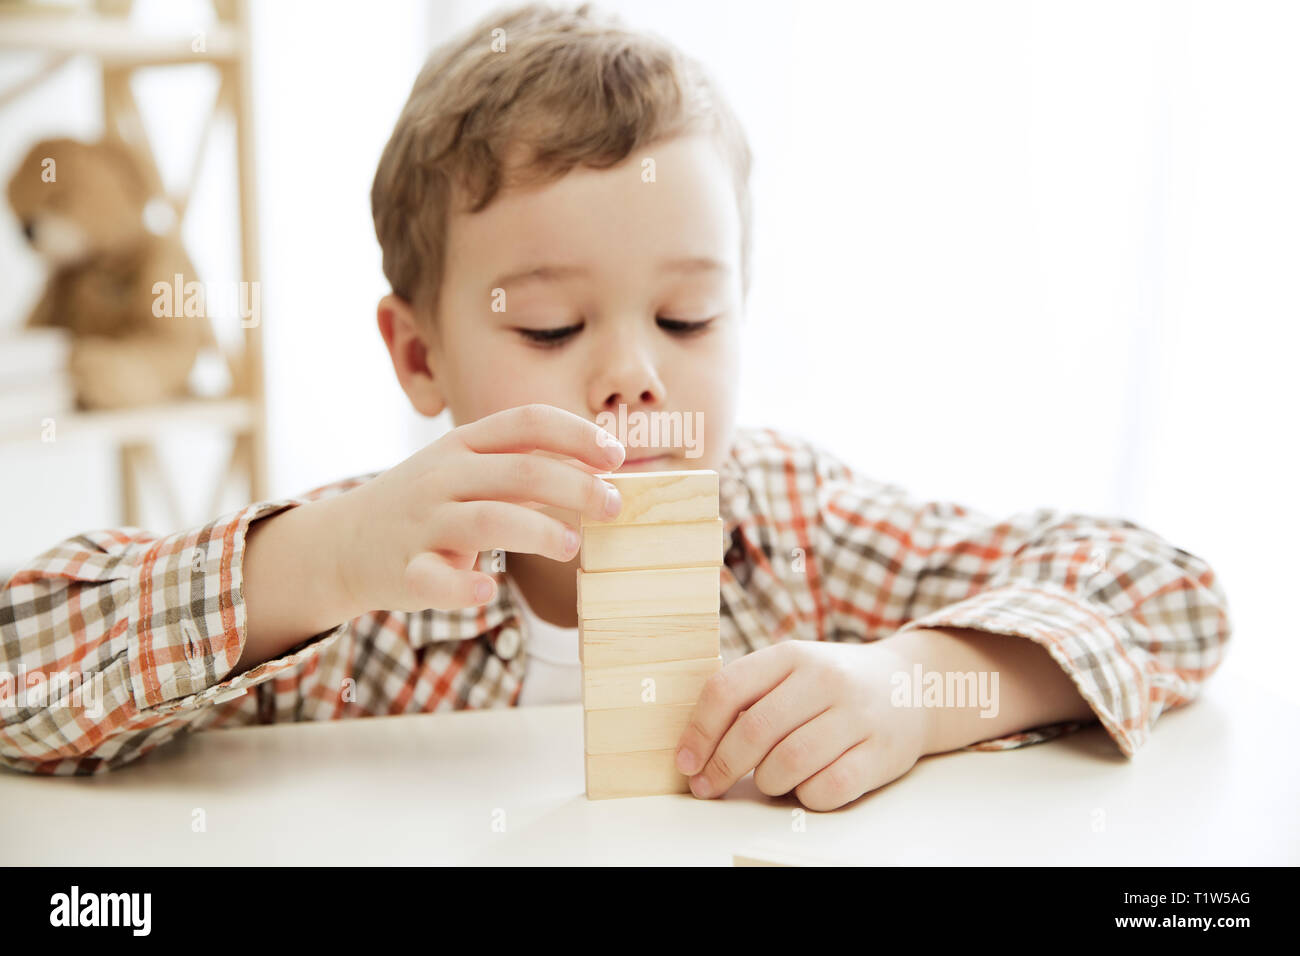 Petit enfant assis sur le plancher. Joli garçon avec des cubes en bois palying à la maison. Image conceptuelle avec l'exemplaire ou l'espace négatif et de mock-up pour votre texte Banque D'Images